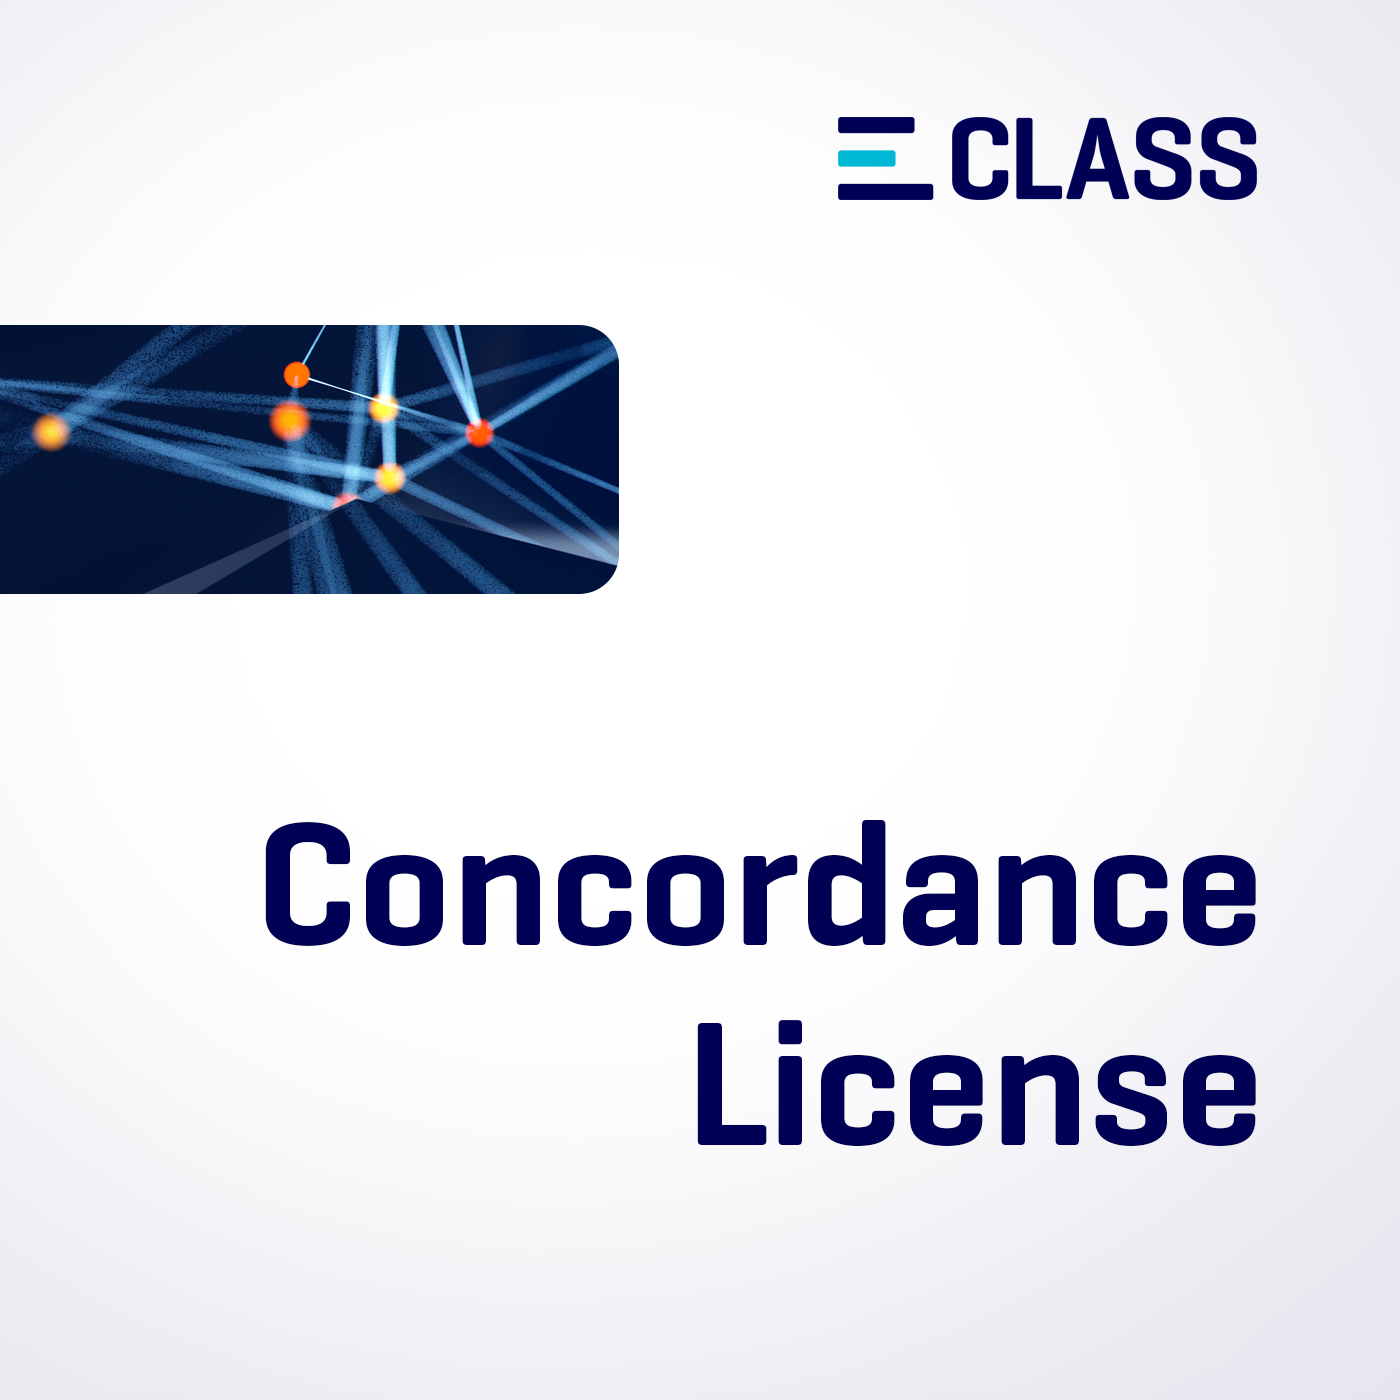 Produktbild: ECLASS Concordance Lizenz